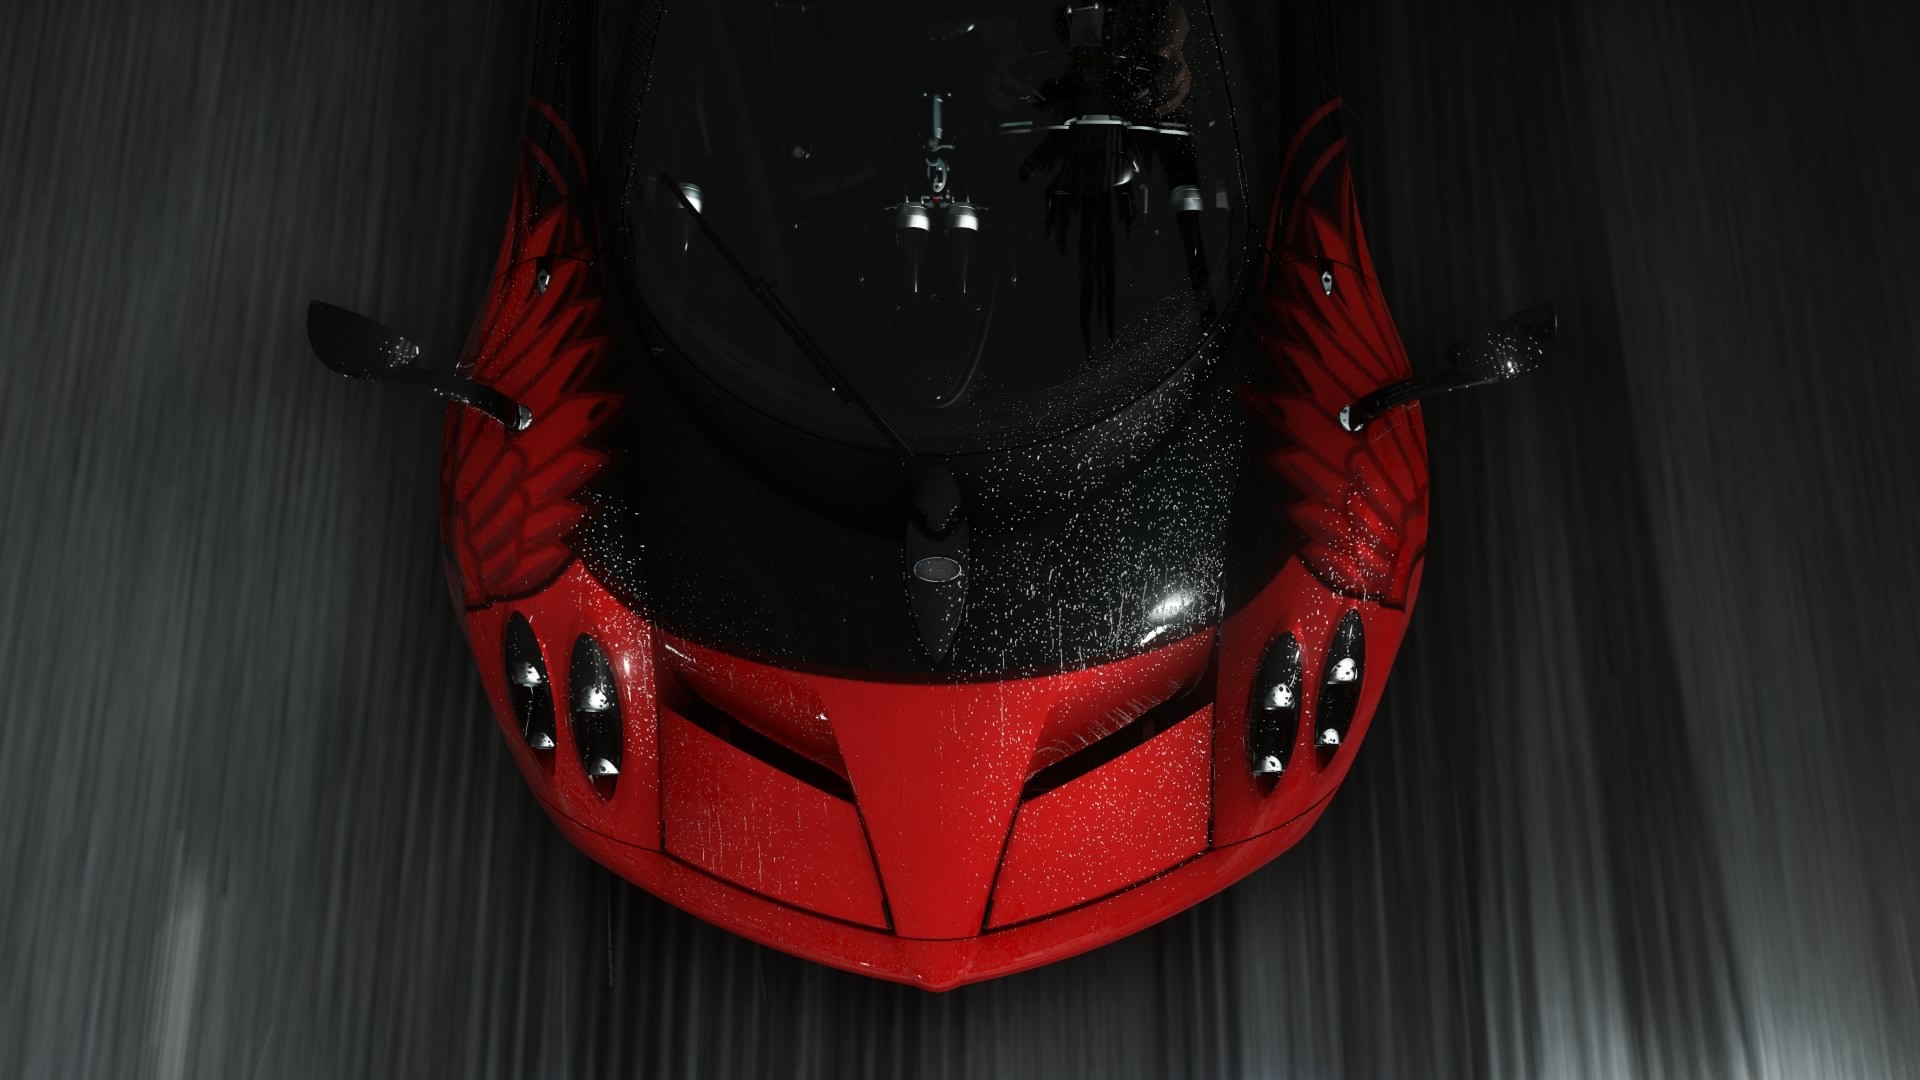 General 1920x1080 racing car supercars vehicle red cars Pagani Pagani Huayra video games